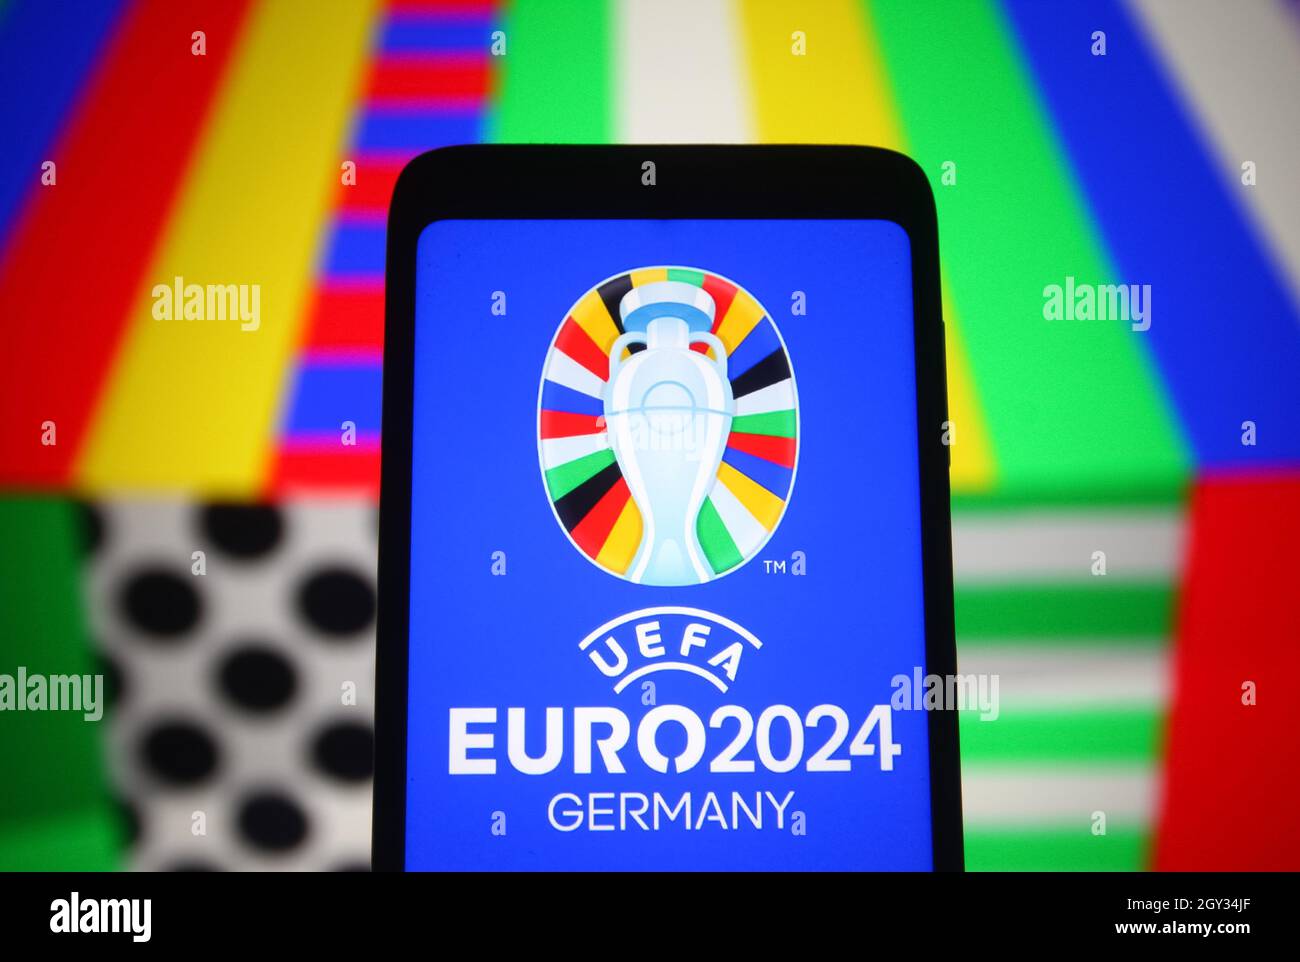 Sur cette photo, le logo de l'UEFA Euro 2024 (Championnat d'Europe de football 2024 de l'UEFA) est visible sur l'écran d'un smartphone. Banque D'Images